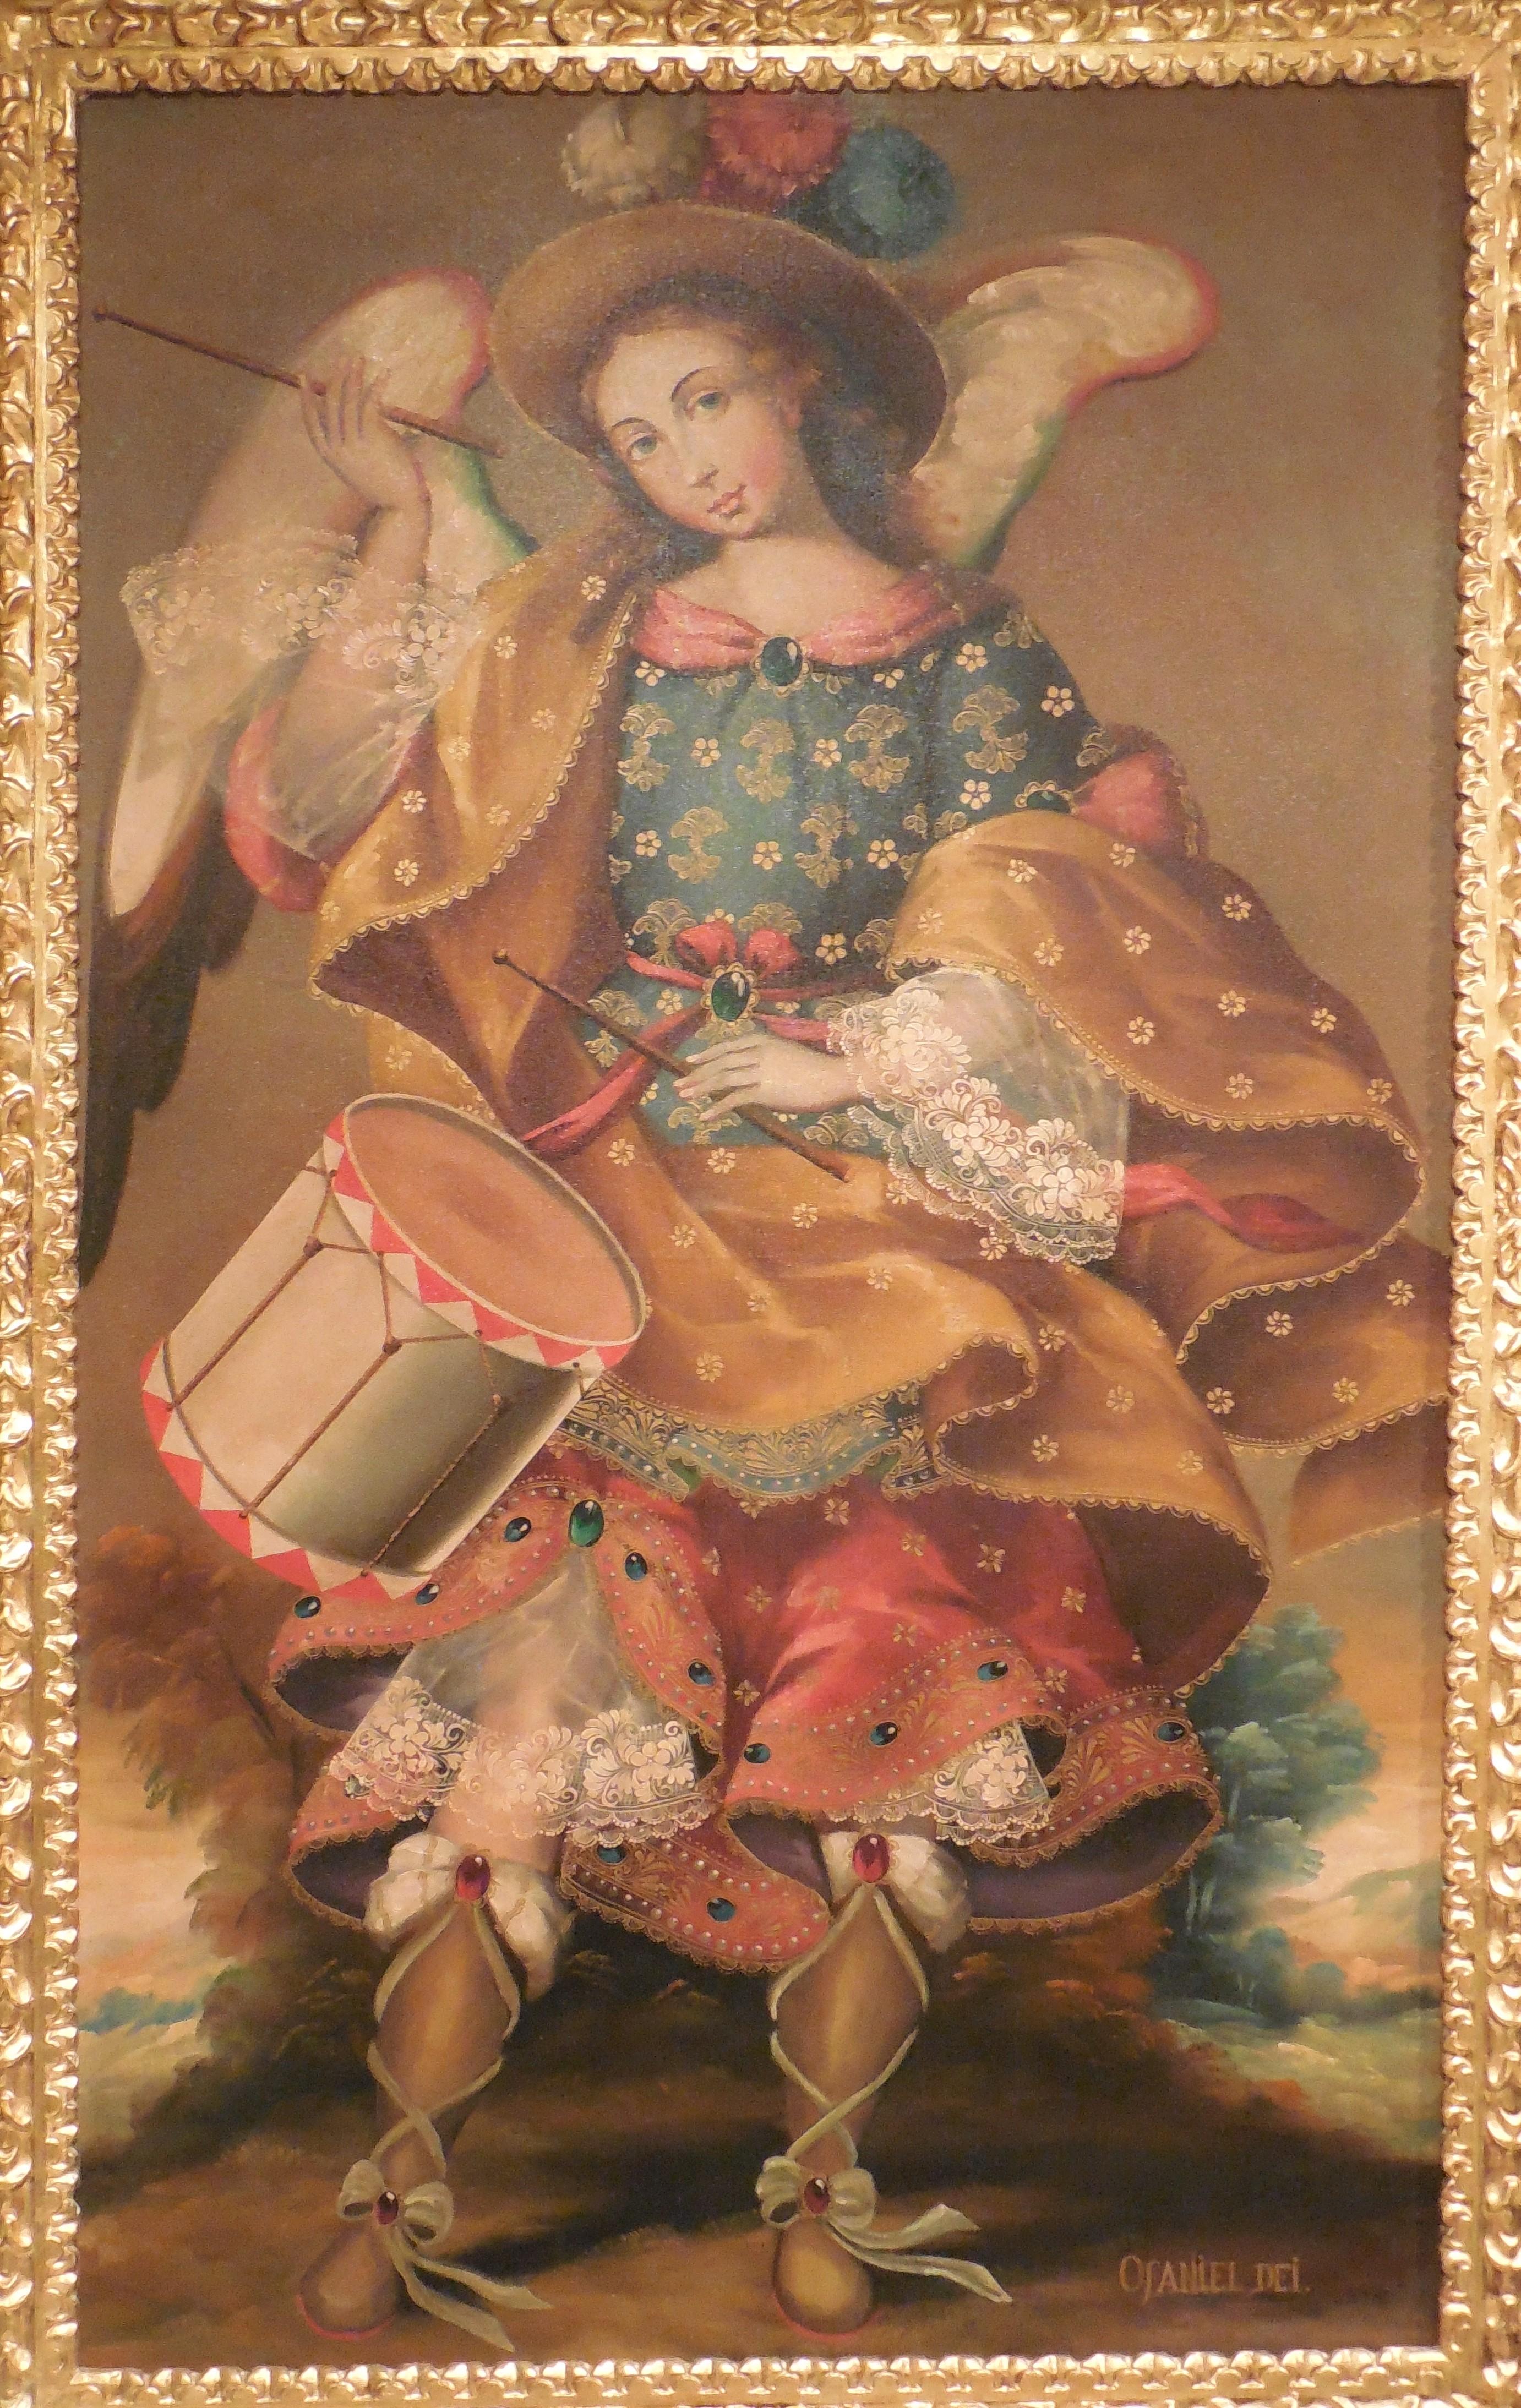 Ofaniel Dei - Painting by Martha Ochoa